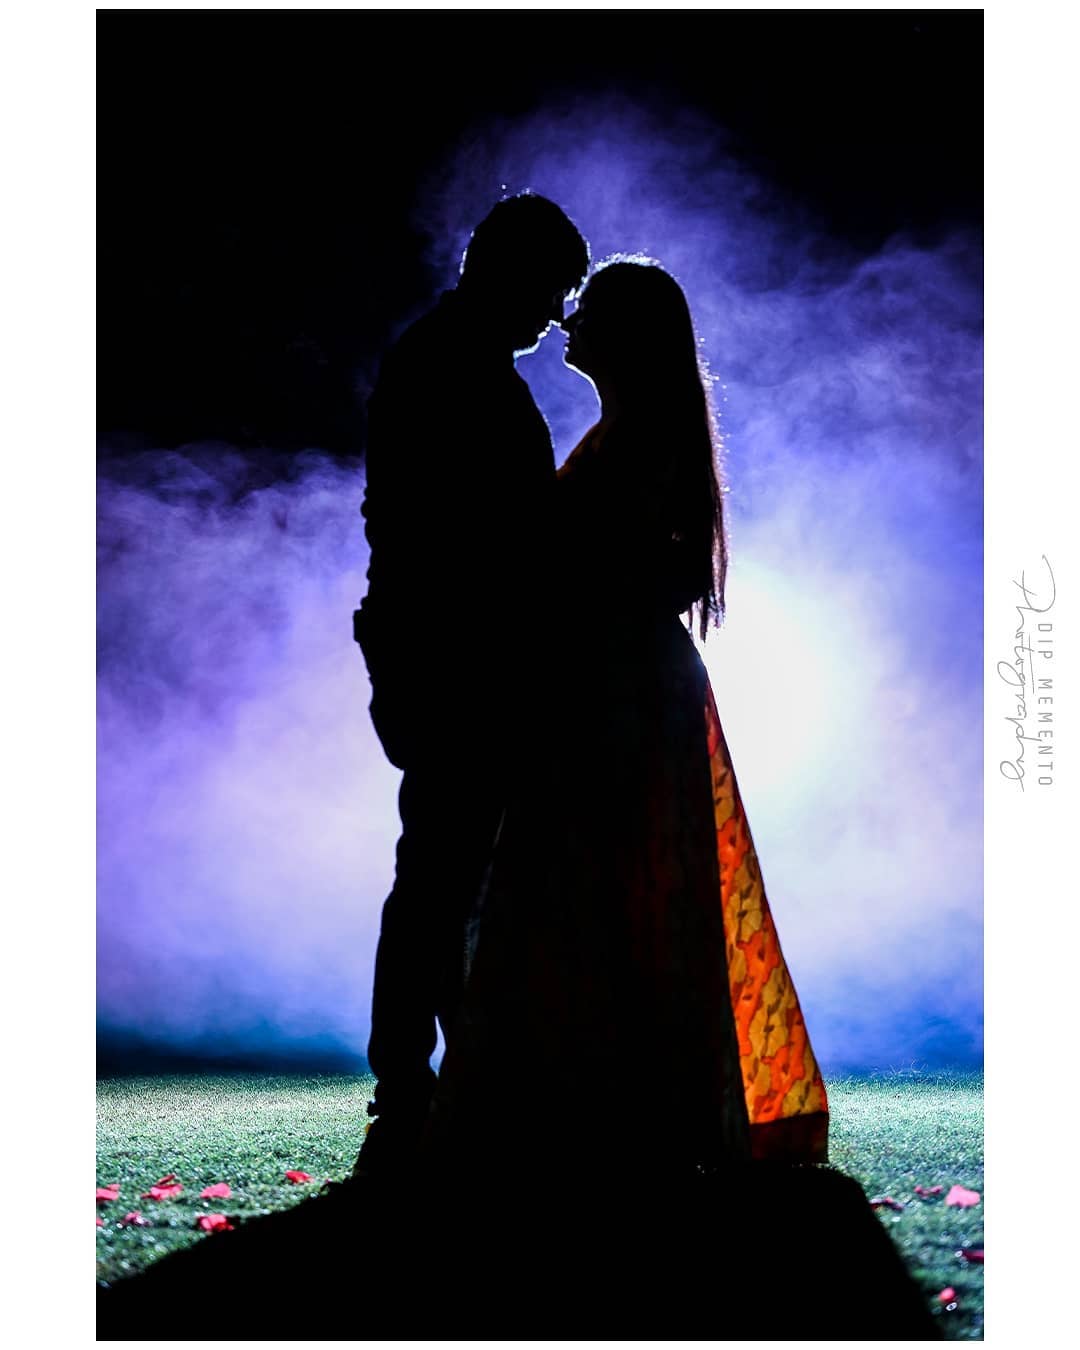 Save the date 9th Feb 2020 👨‍💼Krupal + Vidhi👩‍💼 #preweddingshoot
.
#prewedding Shoot
Captured by: @dip_memento_photography
@meandmyphotography11
.
.
. 
#indiapictures#_soi #weddingphotography
#weddingsutra#wedmegood#shaadisaga
#indianwedding#wedphotoinspiration #9924227745
#weddedwonderland
#indian_wedding_inspiration #coupleshoot#indianwedding#instawedding#wedwise#weddingplz #shaadiseason #bigfatindianwedding #weddingbells #indianweddingphotpgraphy #candidweddingphotography #weddingphotoinspiration #dipmementophotography #weddingz 
@wedzo.in @indianstreetfashion @weddingz.in @indian_wedding_bliss
@weddingsutra @wedmegood @bridalaffairind @theweddingbrigade @weddingplz @weddingfables @indian_wedding_inspiration @weddingdiary @_punjabi_weddings @dulhaanddulhan @thebridesofindia @indianweddings @weddingdream @indianweddingbuzz @shaadisaga @zo_wed